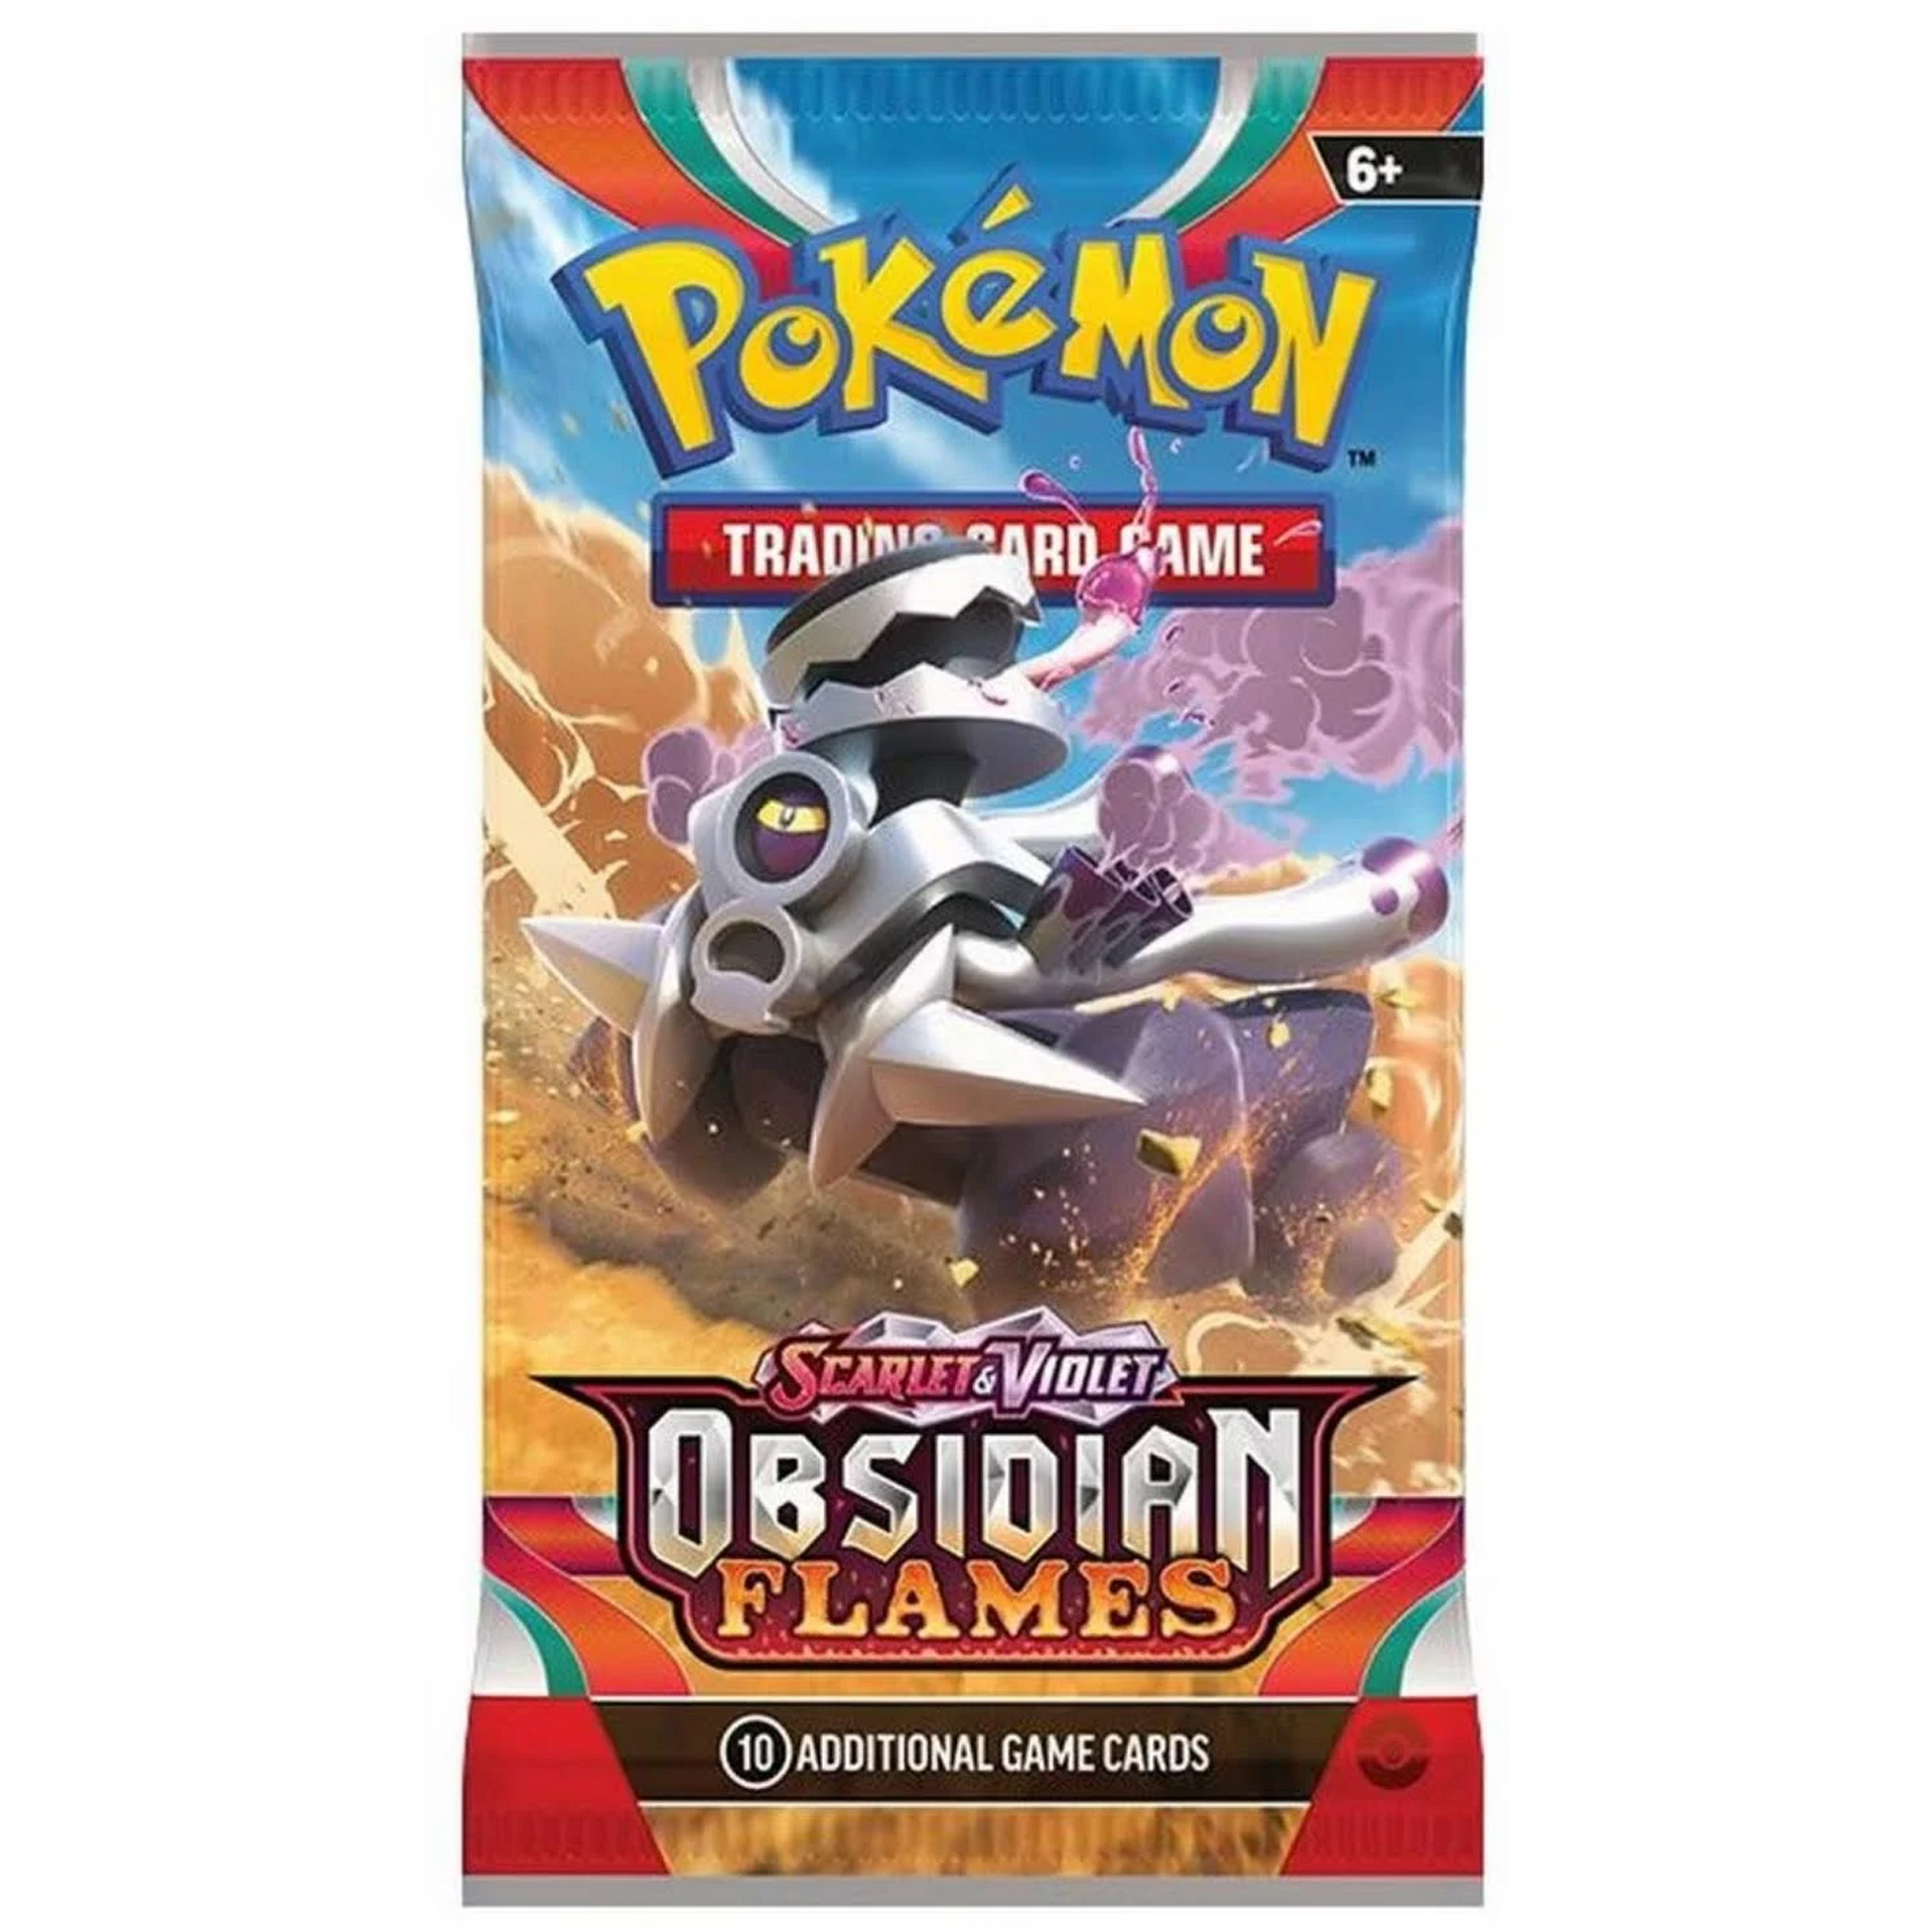 Pokémon TCG Scarlet & Violet Obsidian Flames Booster Pack (Design 2) | Happy Piranha